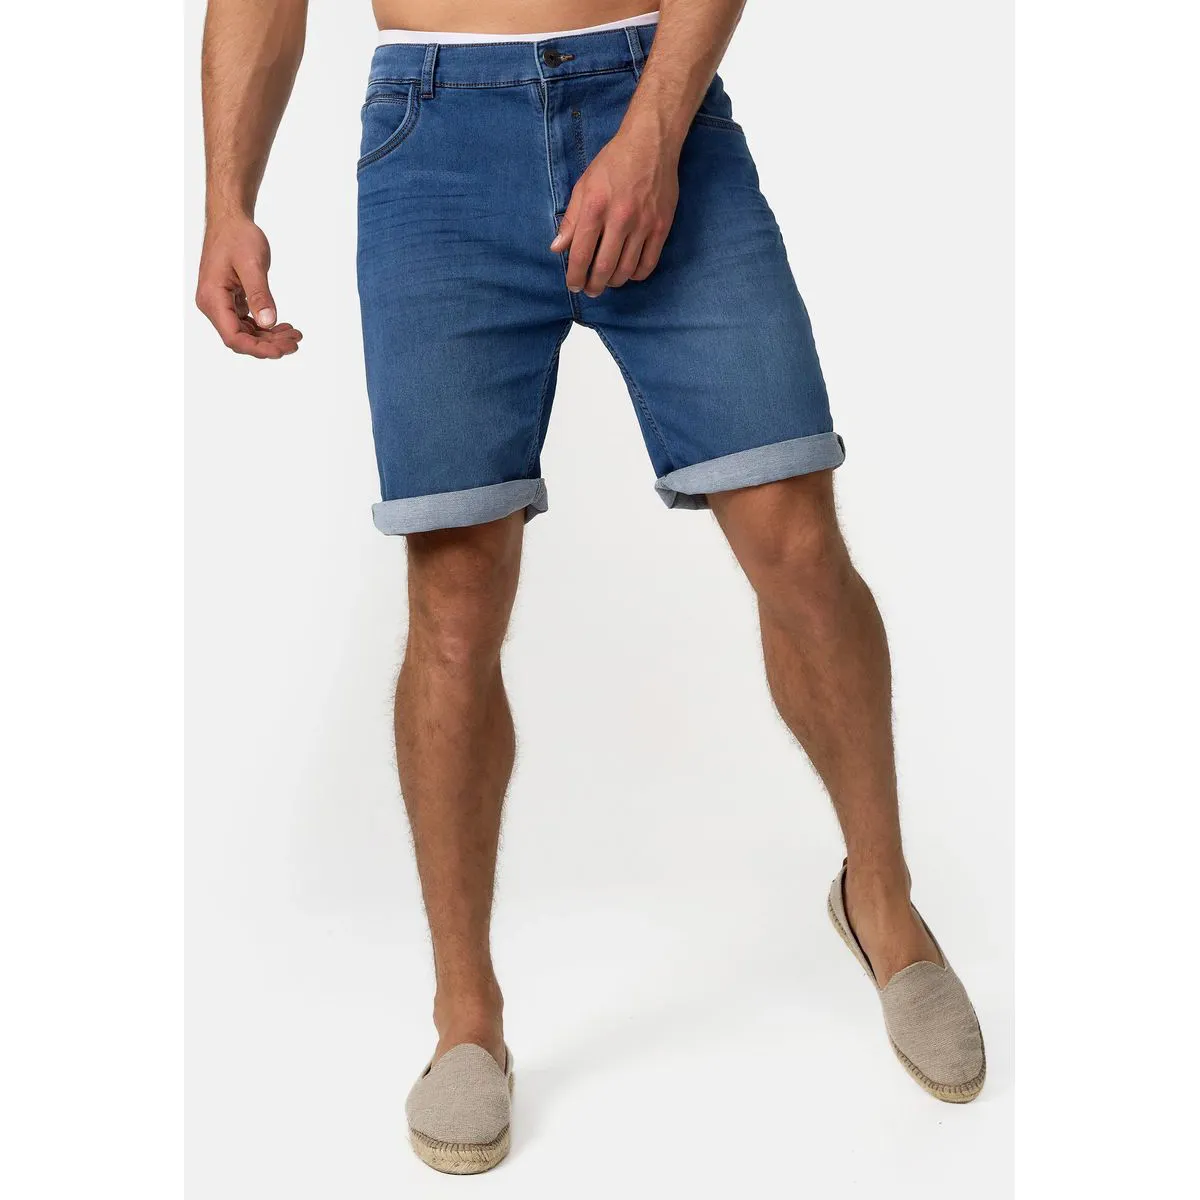 2023 Baumwolle Sommer Shorts Männer Denim Shorts Jeans Hose Homme benutzer definierte kurze Jeans Männer Skinny für Männer stilvolle Baggy